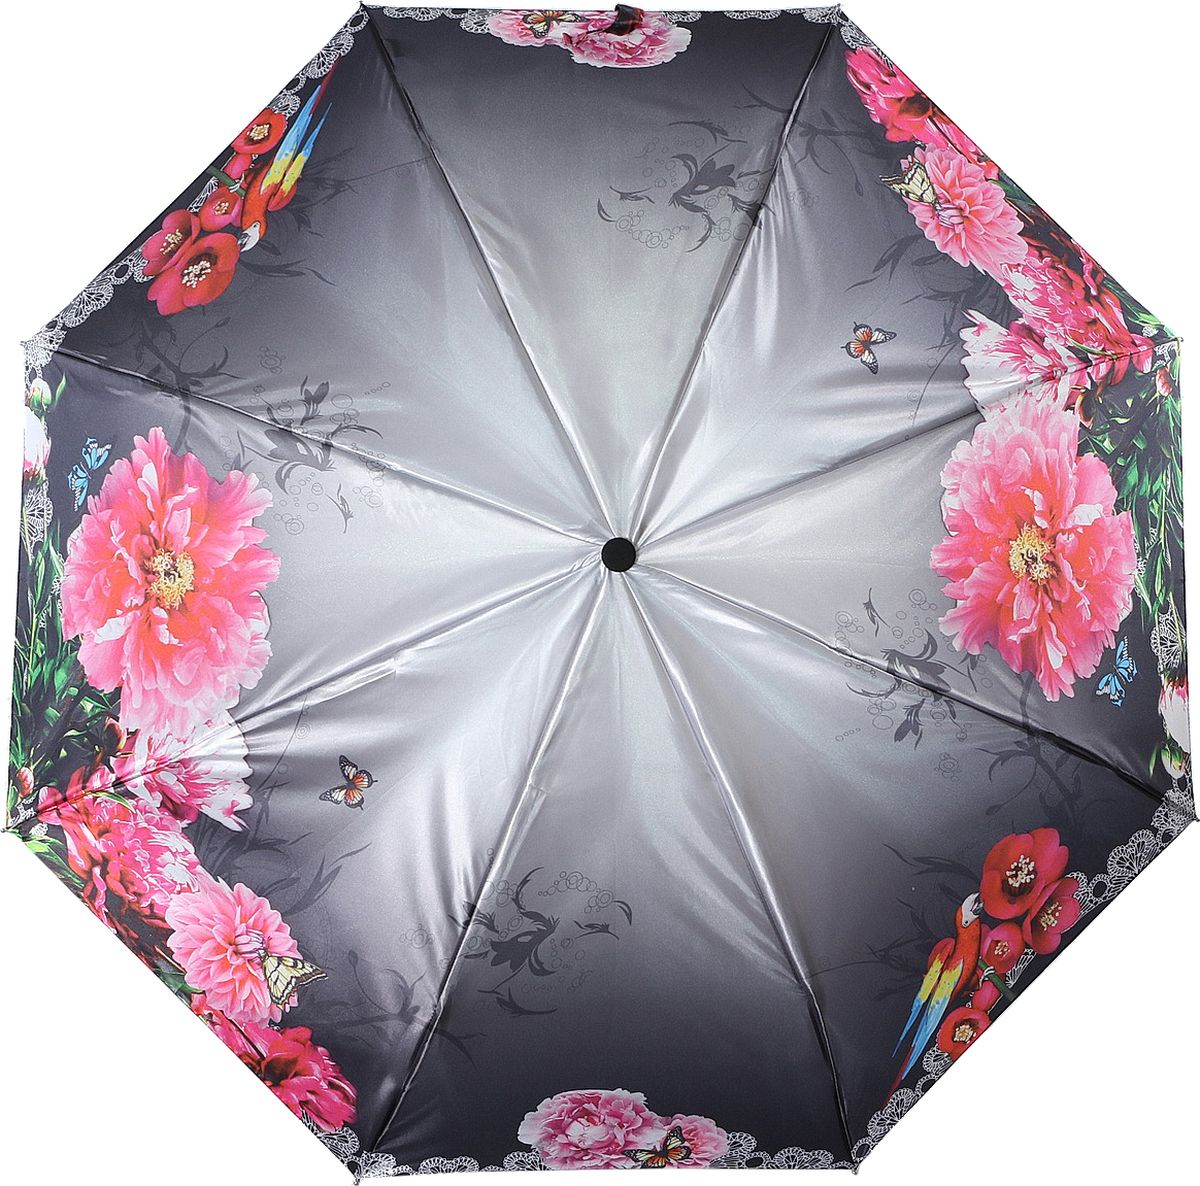 Зонт женский Magic Rain, автомат, 3 сложения, цвет: серый, розовый, зеленый. 7337-1621